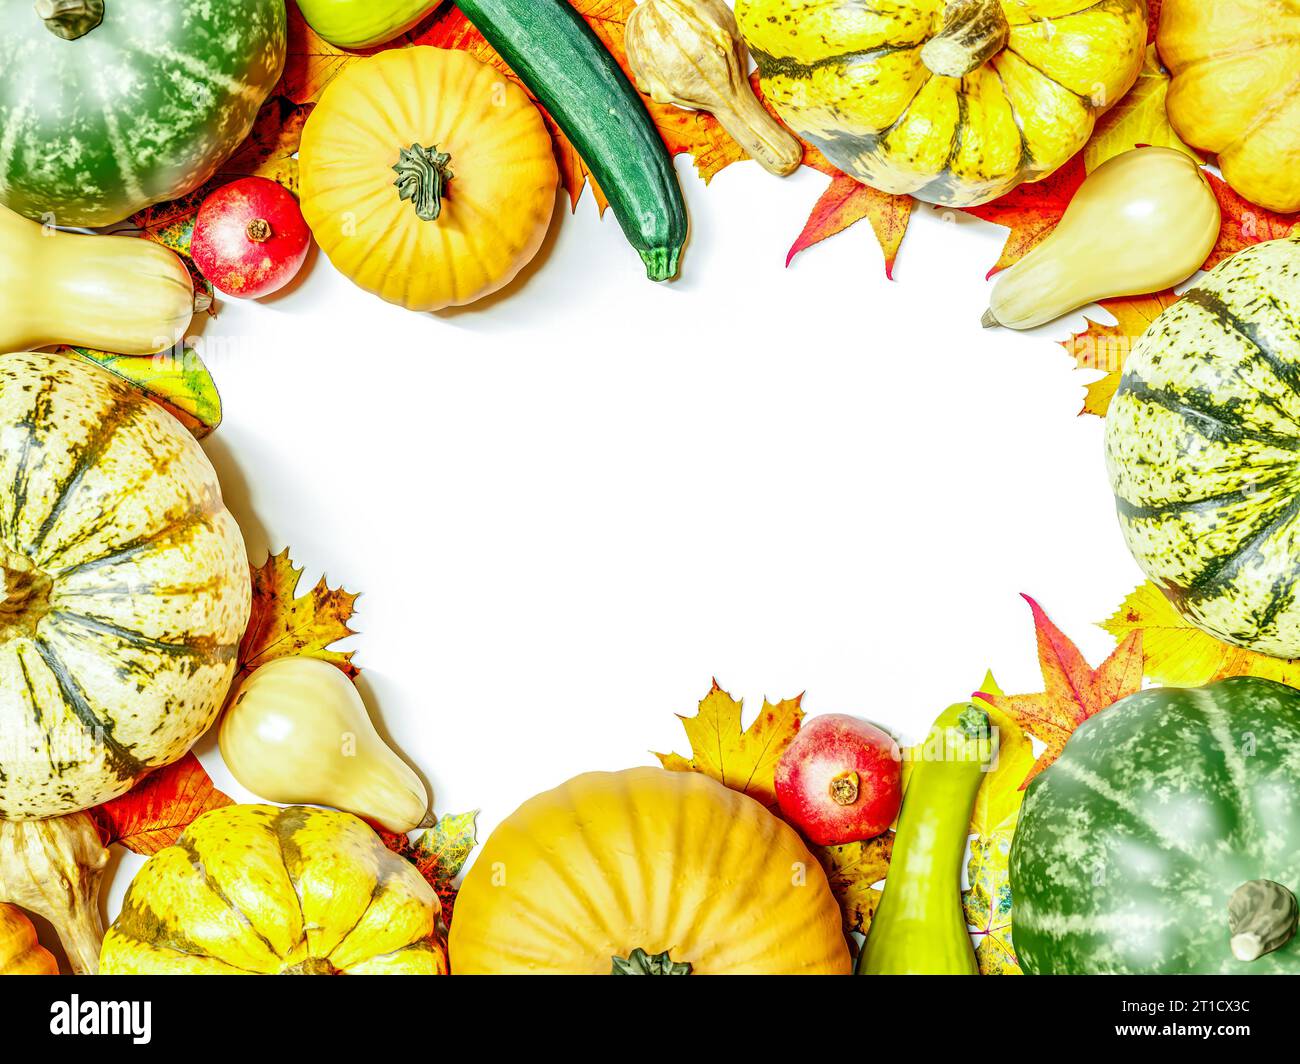 Zucche estive, zucche, zucchine e altri raccolti autunnali disposti in cornice con spazio bianco al centro Foto Stock